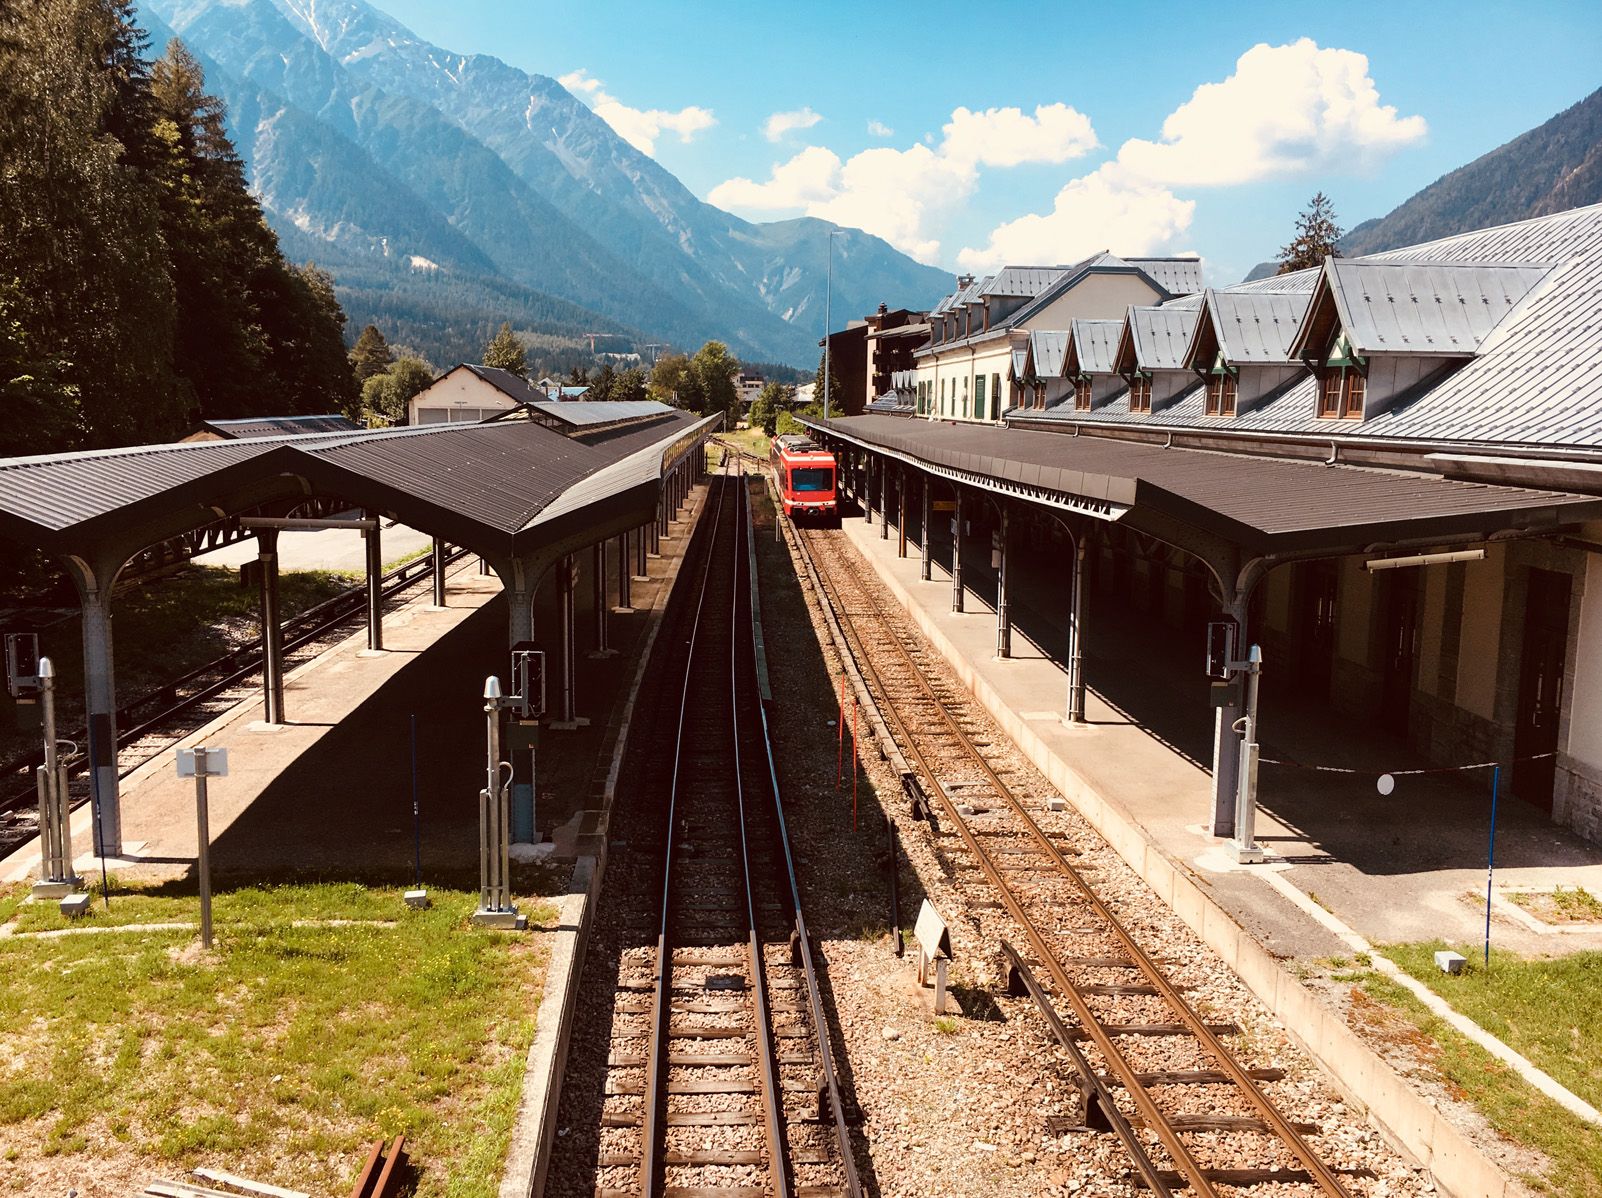 Albert Planas "Estació de tren de Chamonix"